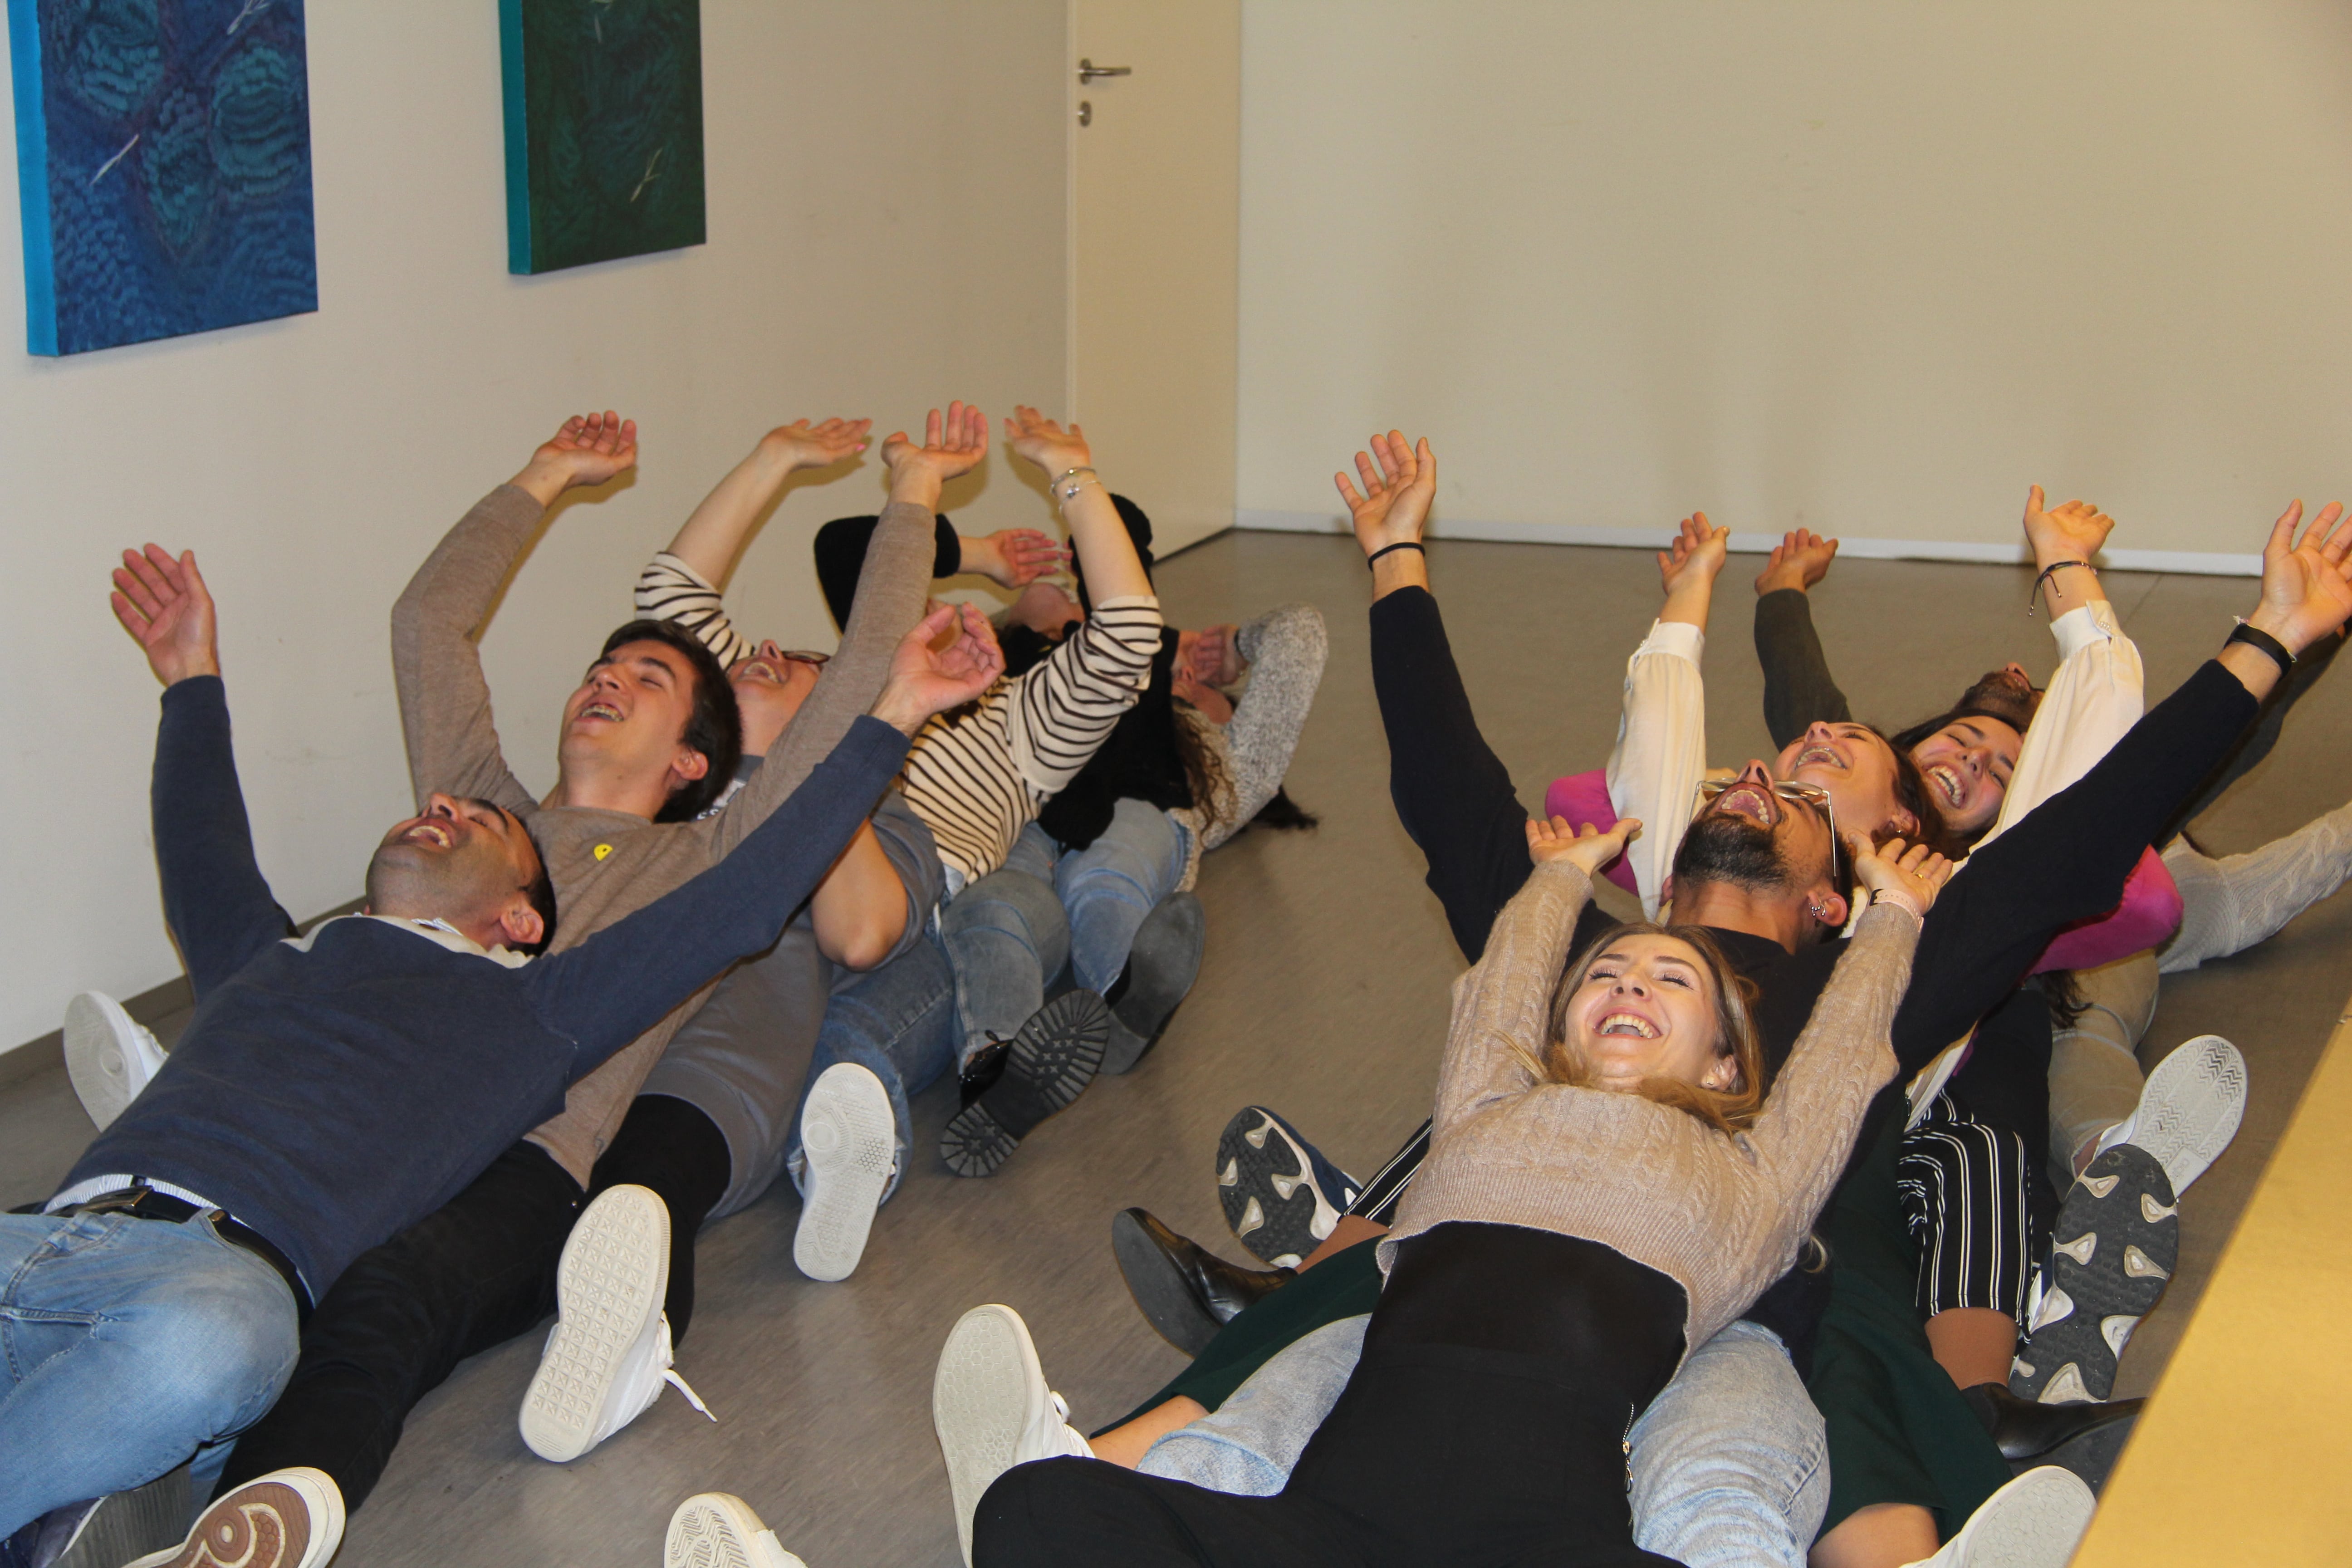 Organizamos um Workshop de Yoga do Riso, pois os riso é uma ferramenta eficaz na melhoria da saúde fisica e mental